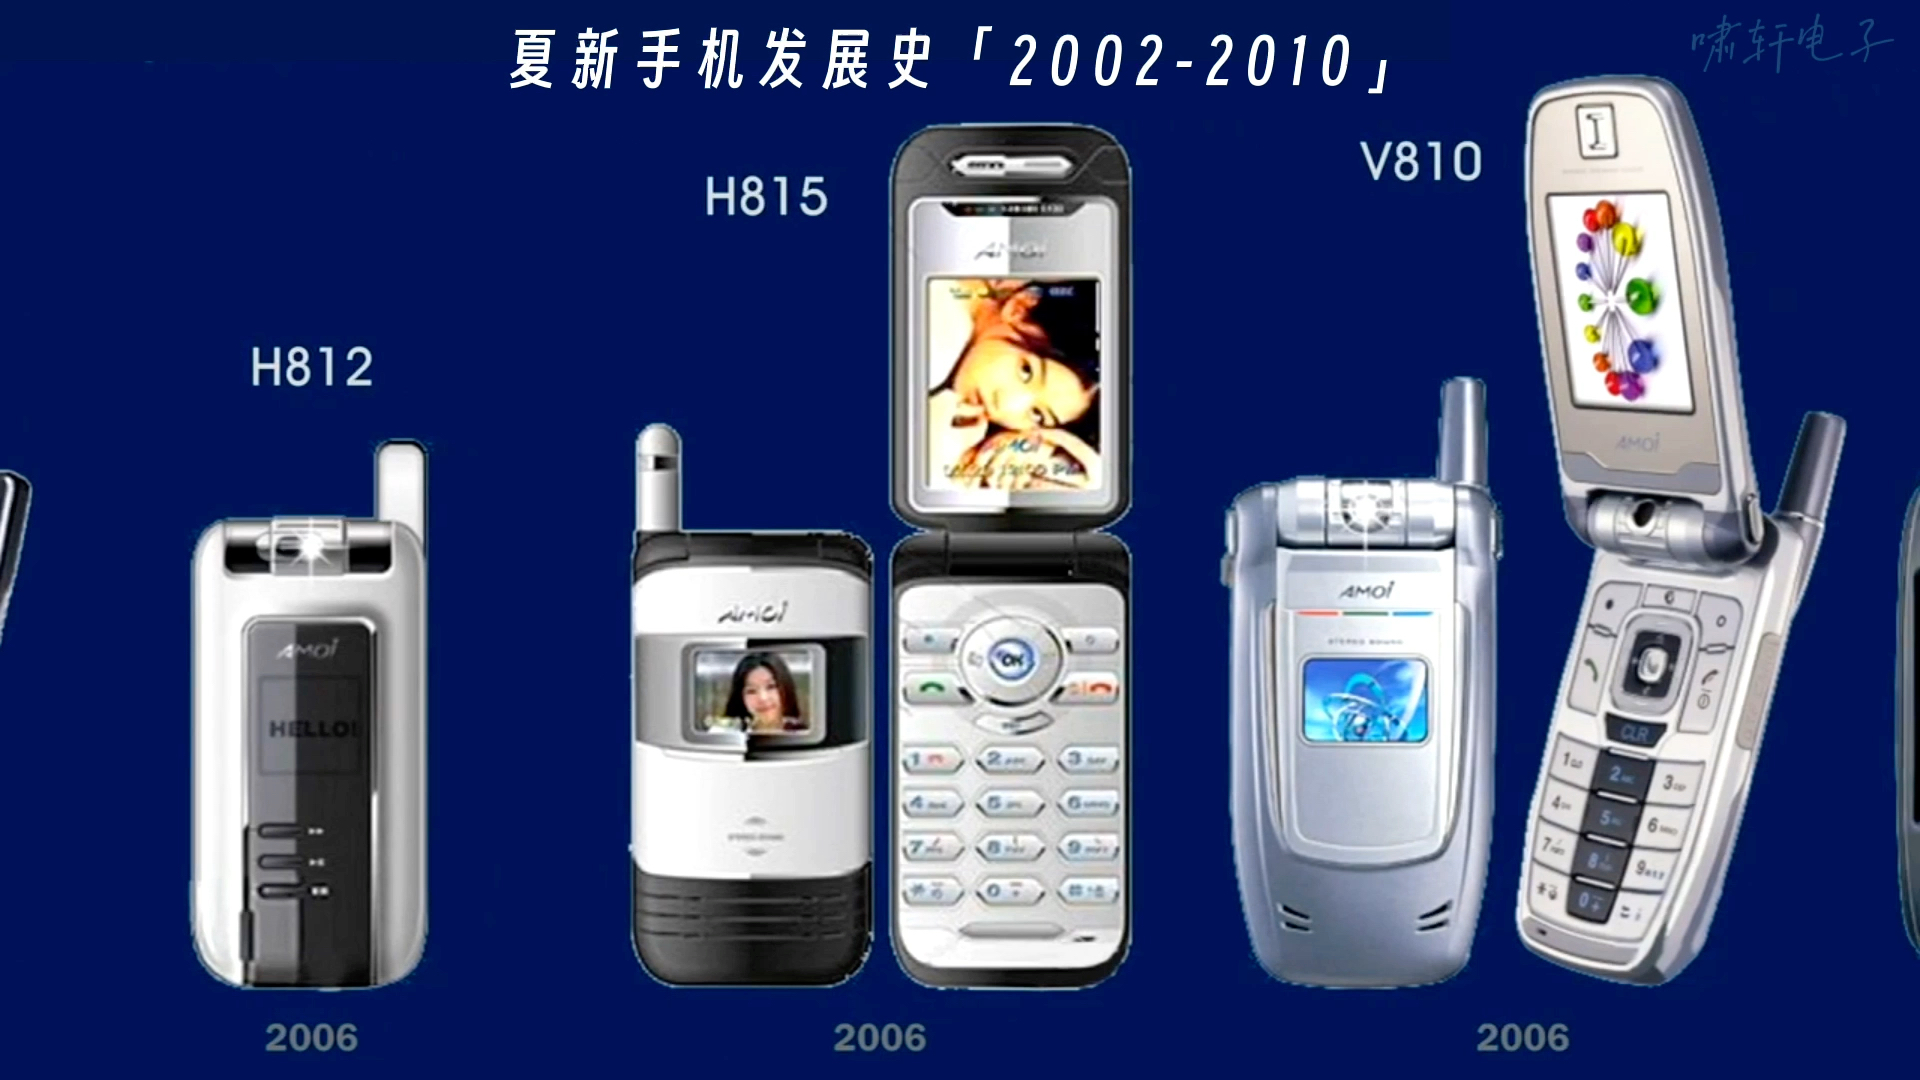 夏新「AMOi」手机发展史